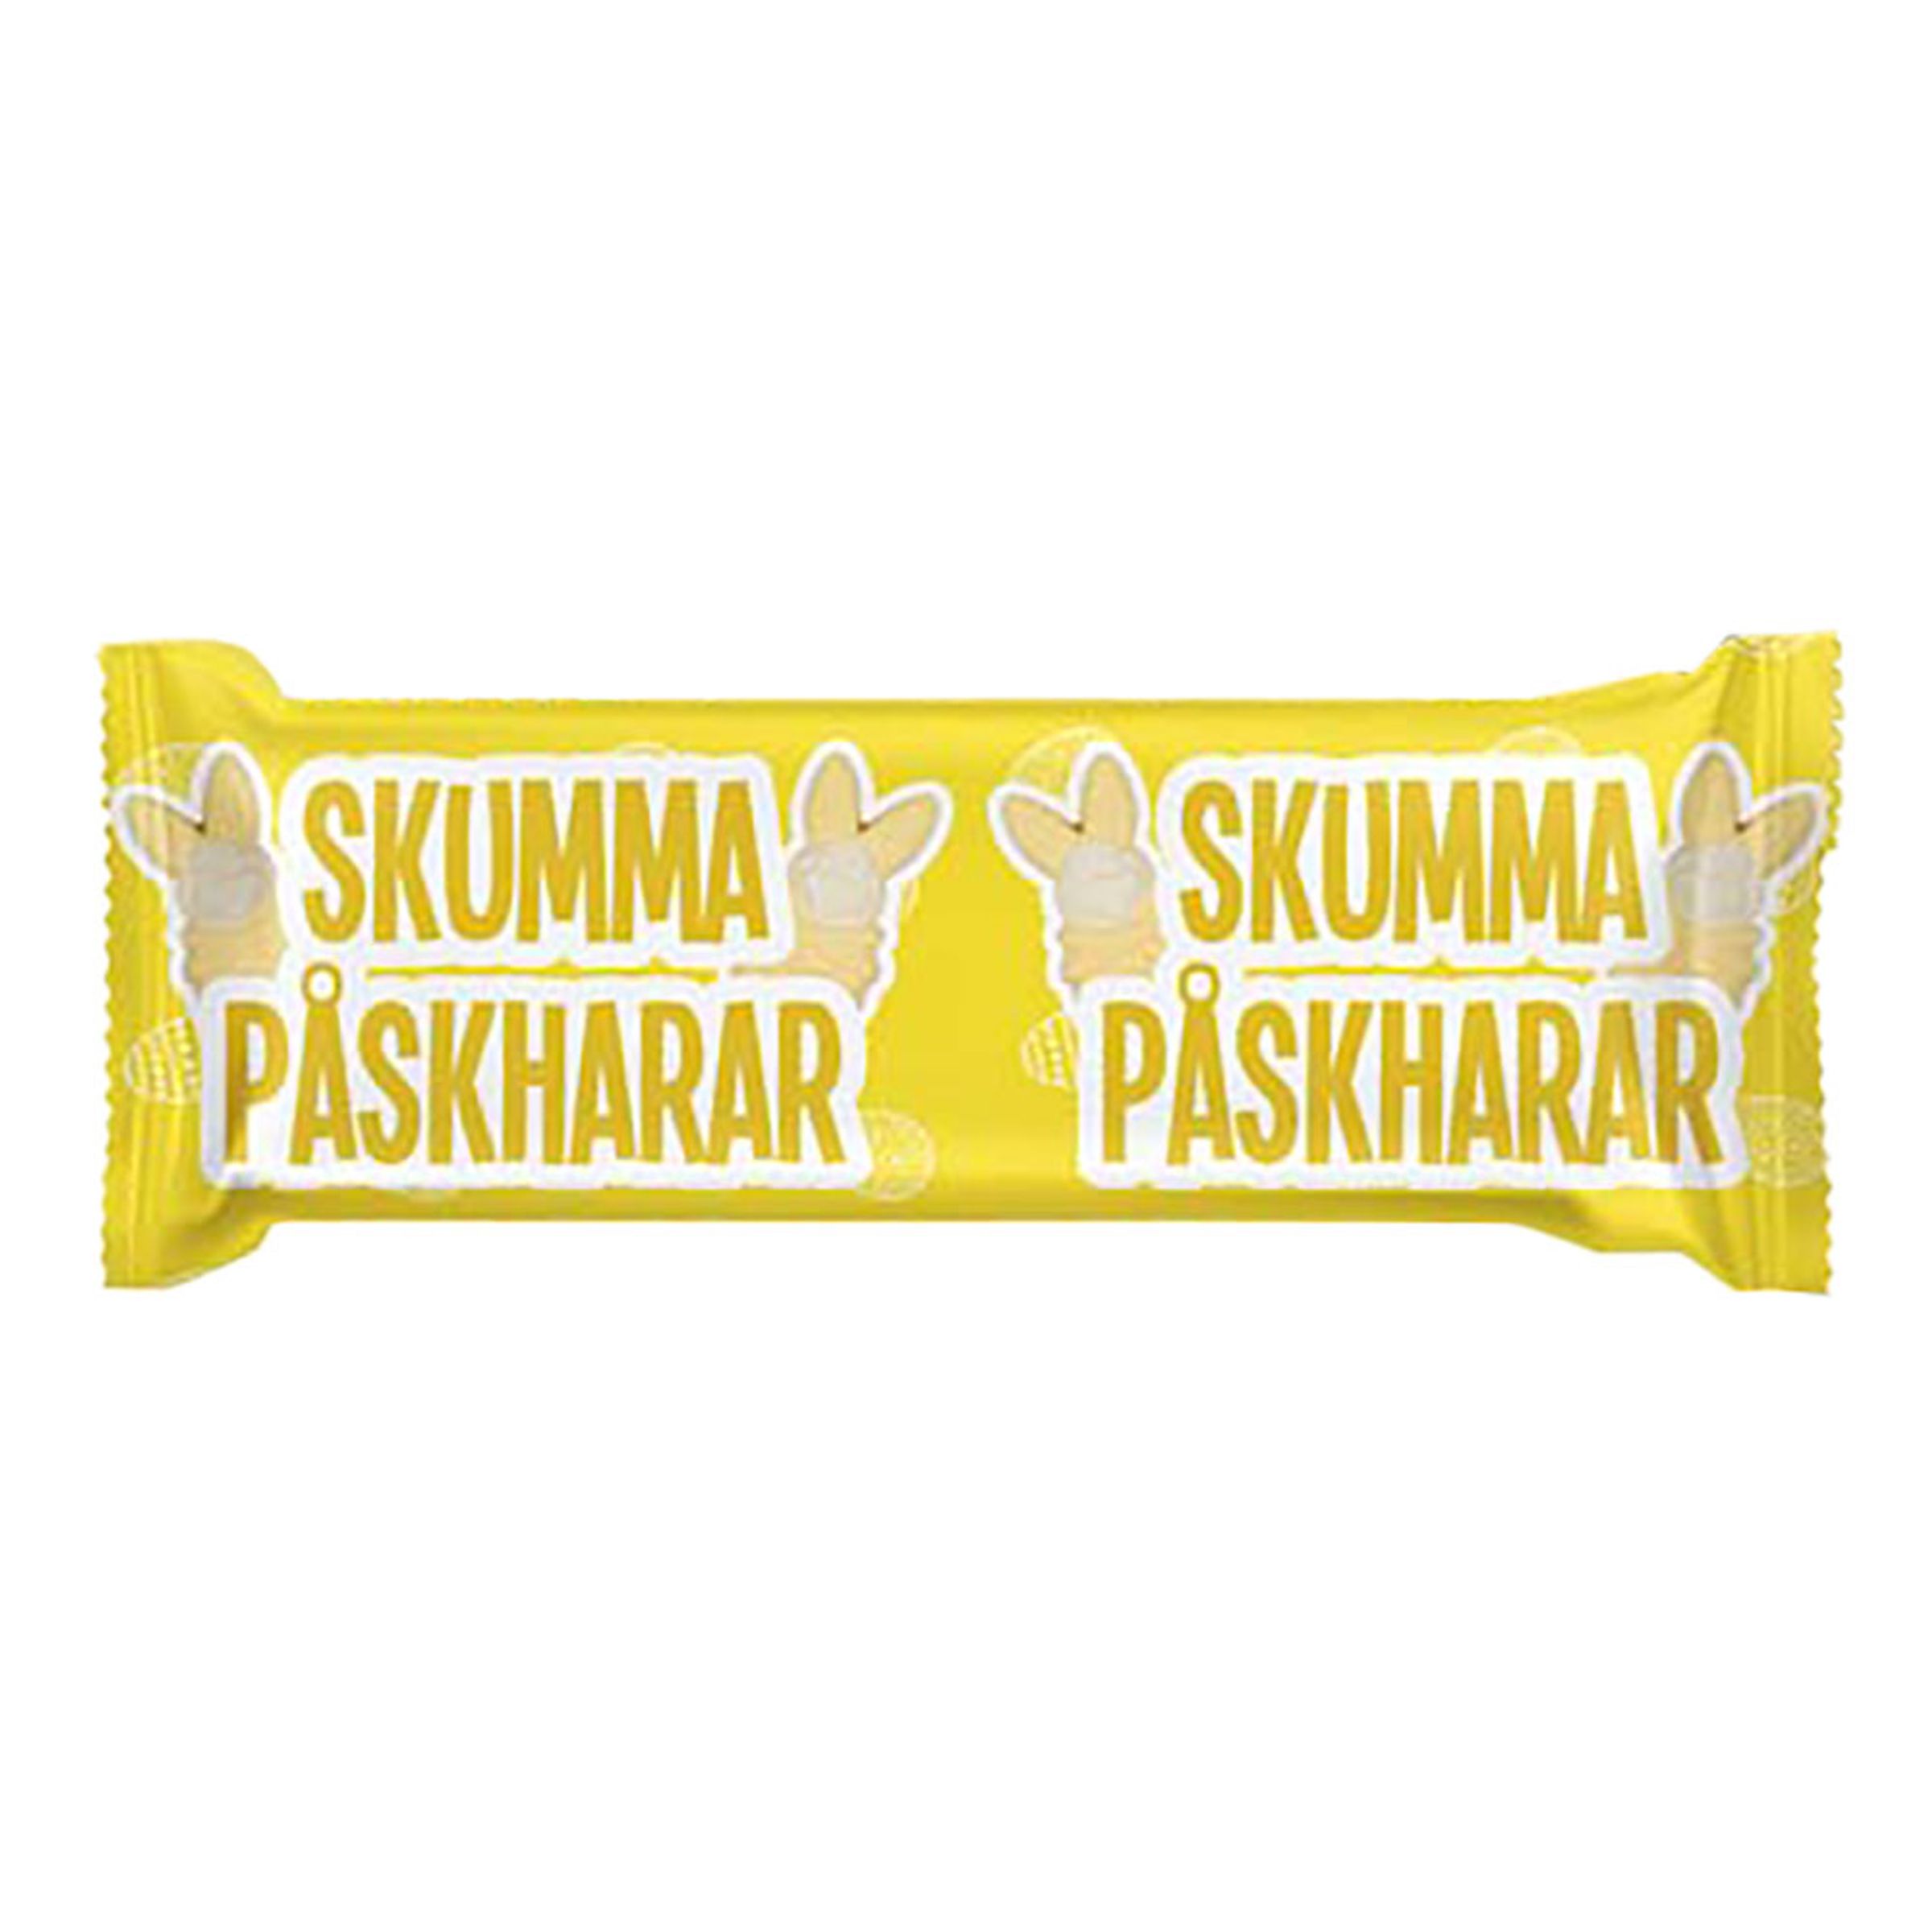 Skumma Påskharar - 25 gram